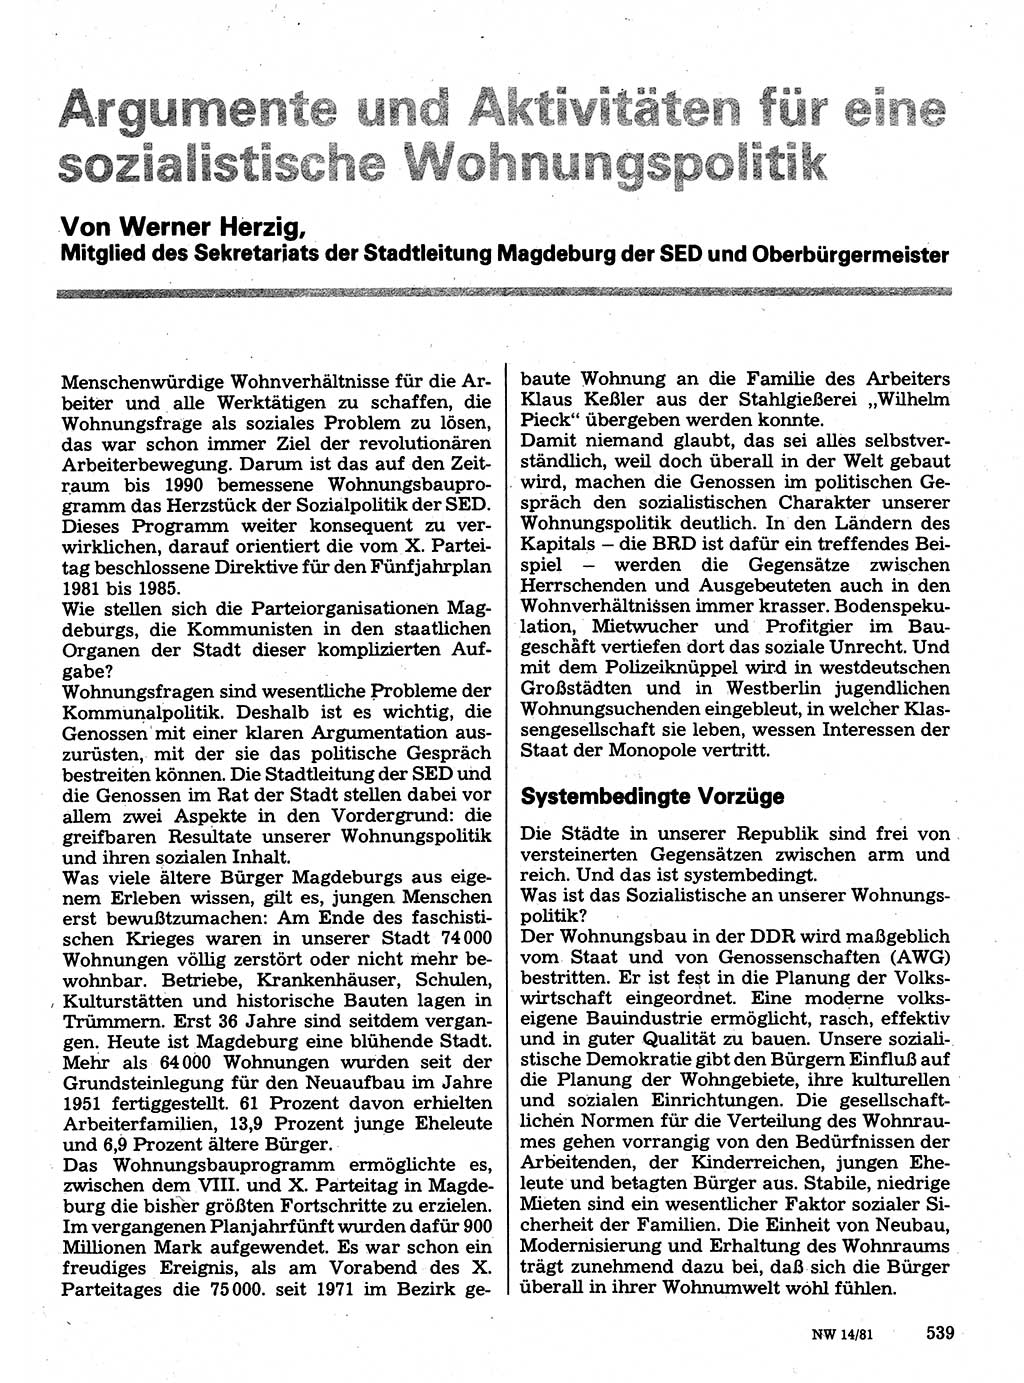 Neuer Weg (NW), Organ des Zentralkomitees (ZK) der SED (Sozialistische Einheitspartei Deutschlands) für Fragen des Parteilebens, 36. Jahrgang [Deutsche Demokratische Republik (DDR)] 1981, Seite 539 (NW ZK SED DDR 1981, S. 539)